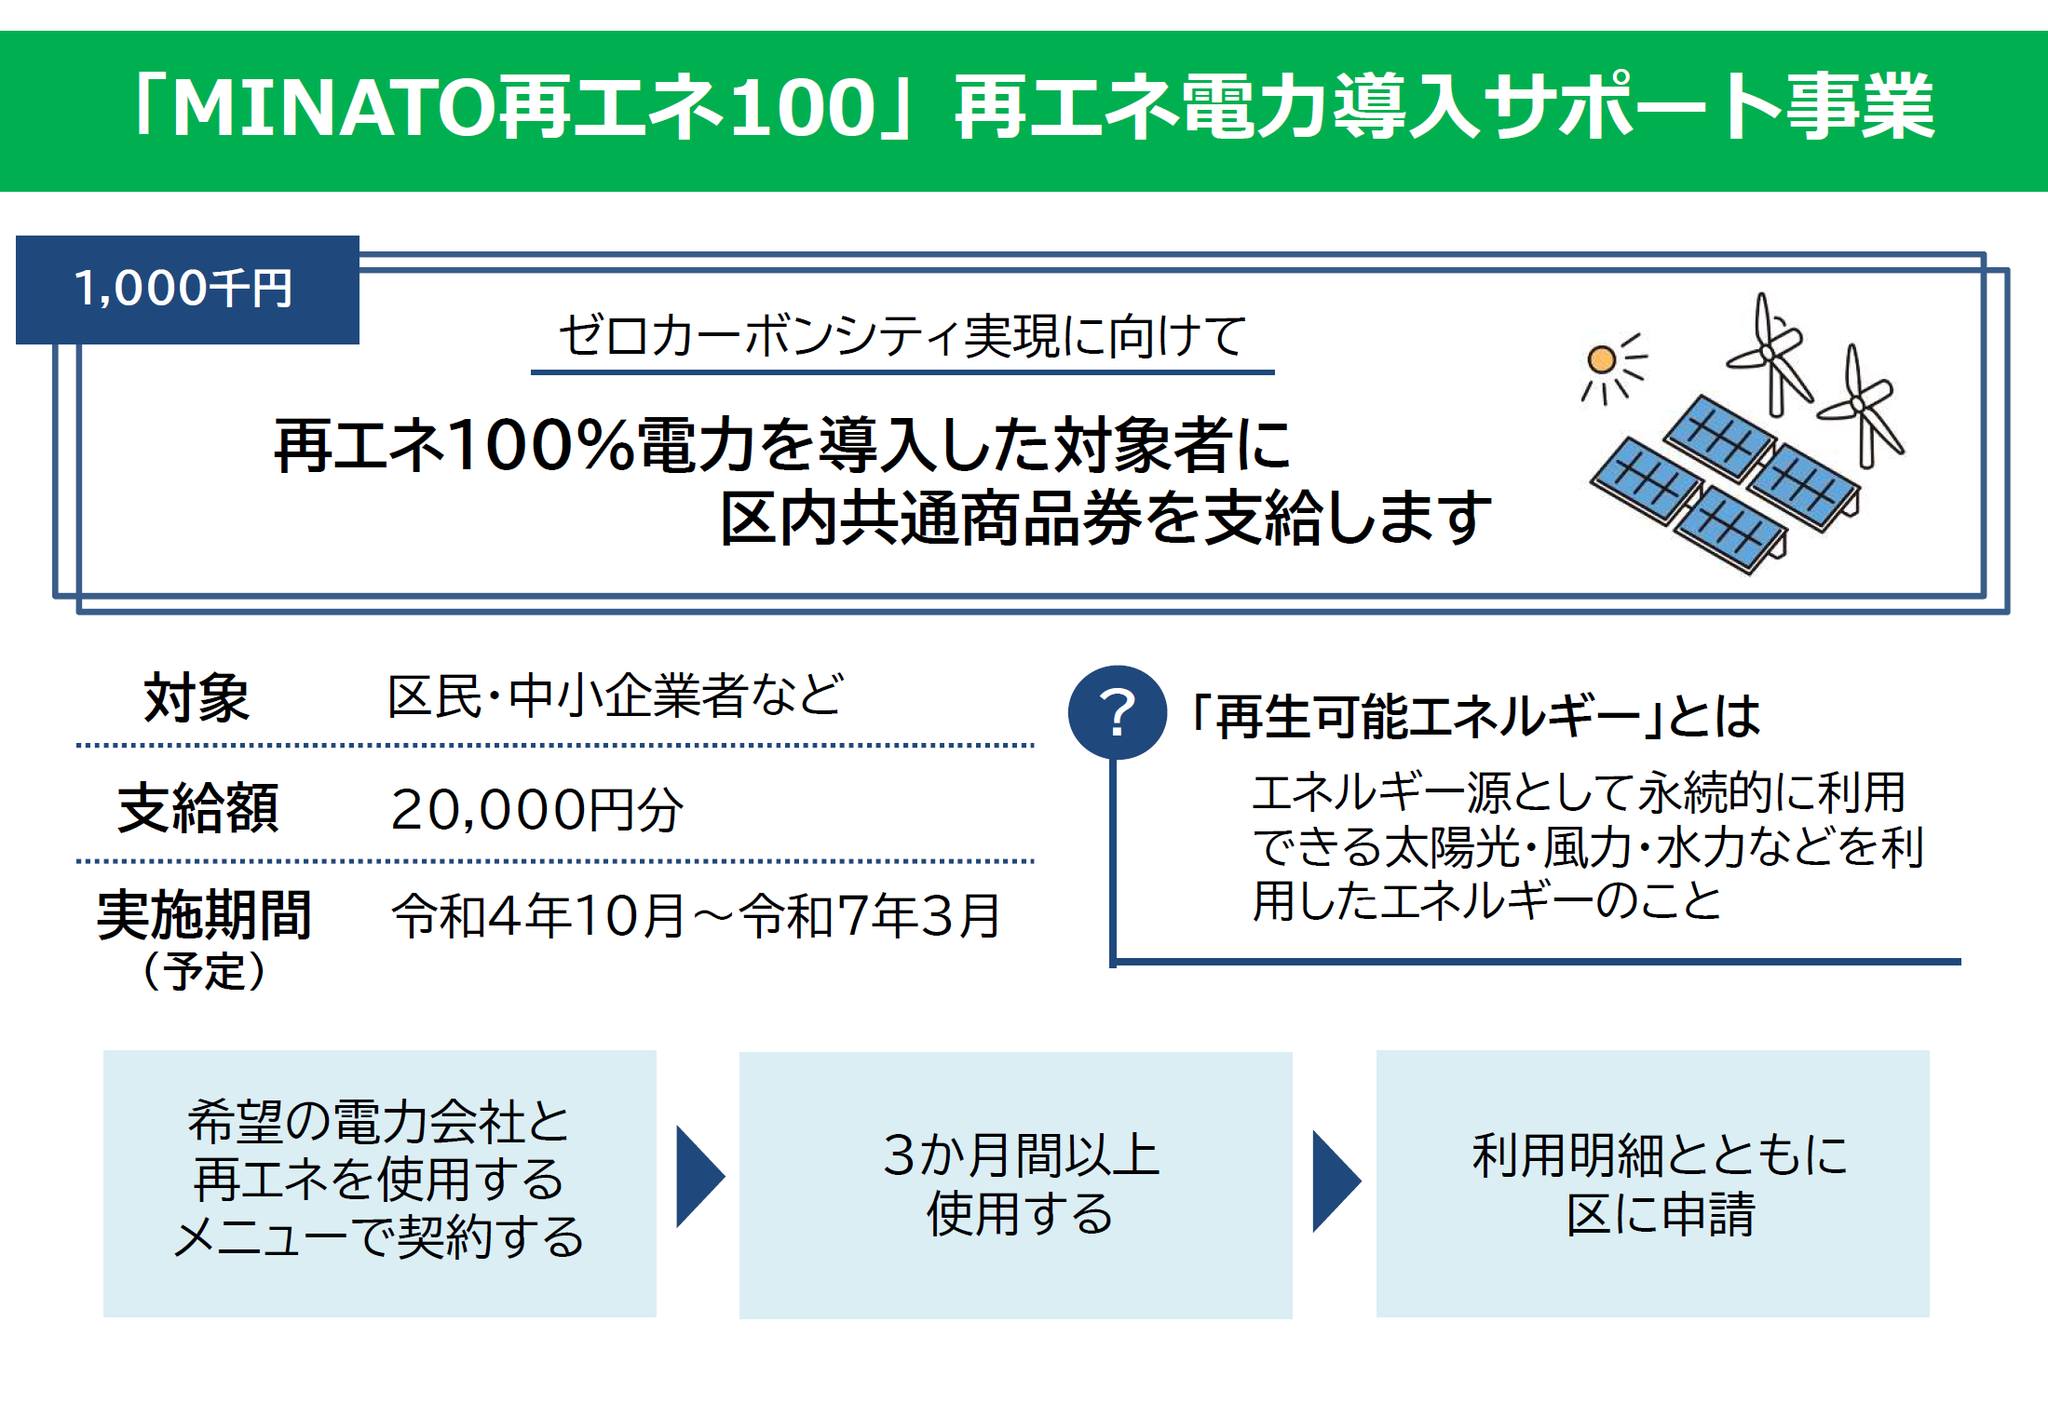 【2022年11月1日】再エネ100%切替で商品券2万円支給を情報提供